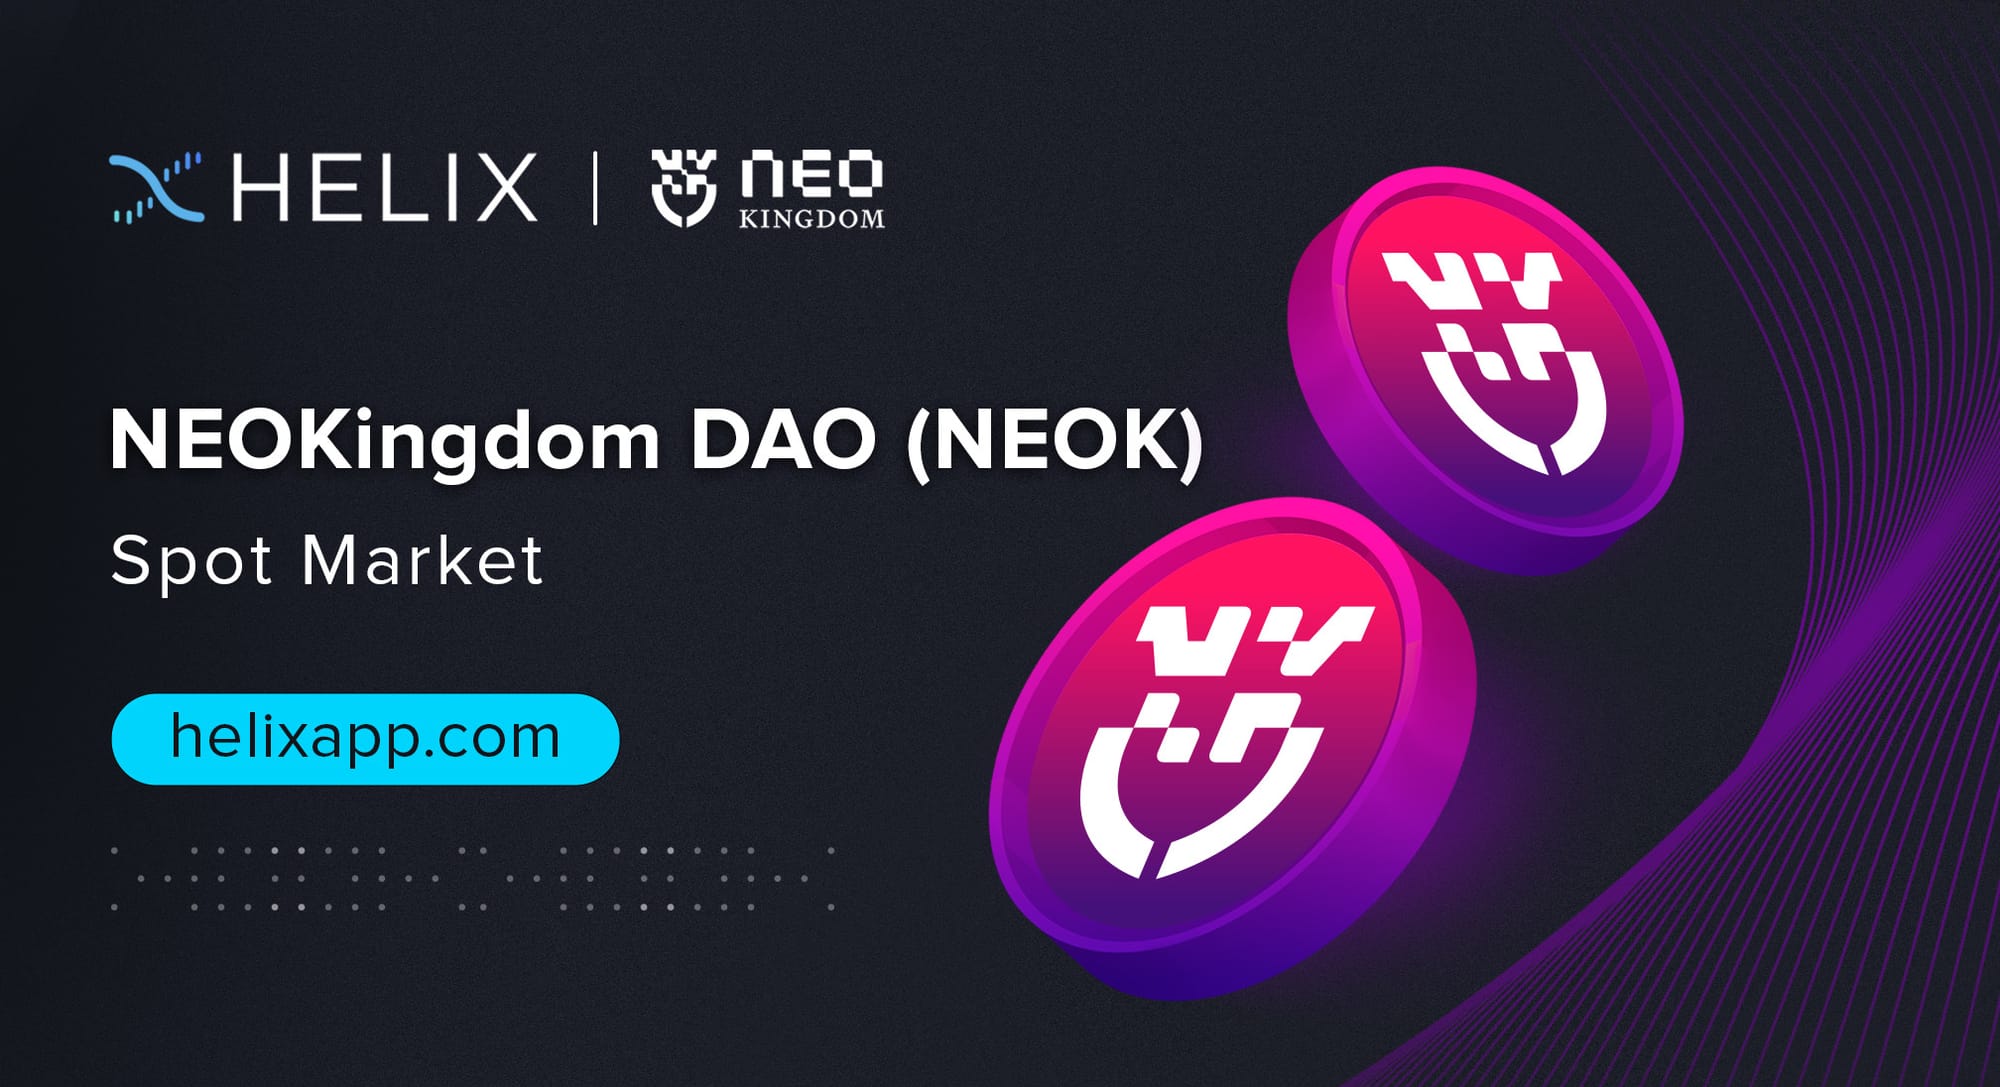 Decentralized NEOKingdom DAO (NEOK) Spot Market Listing on Helix